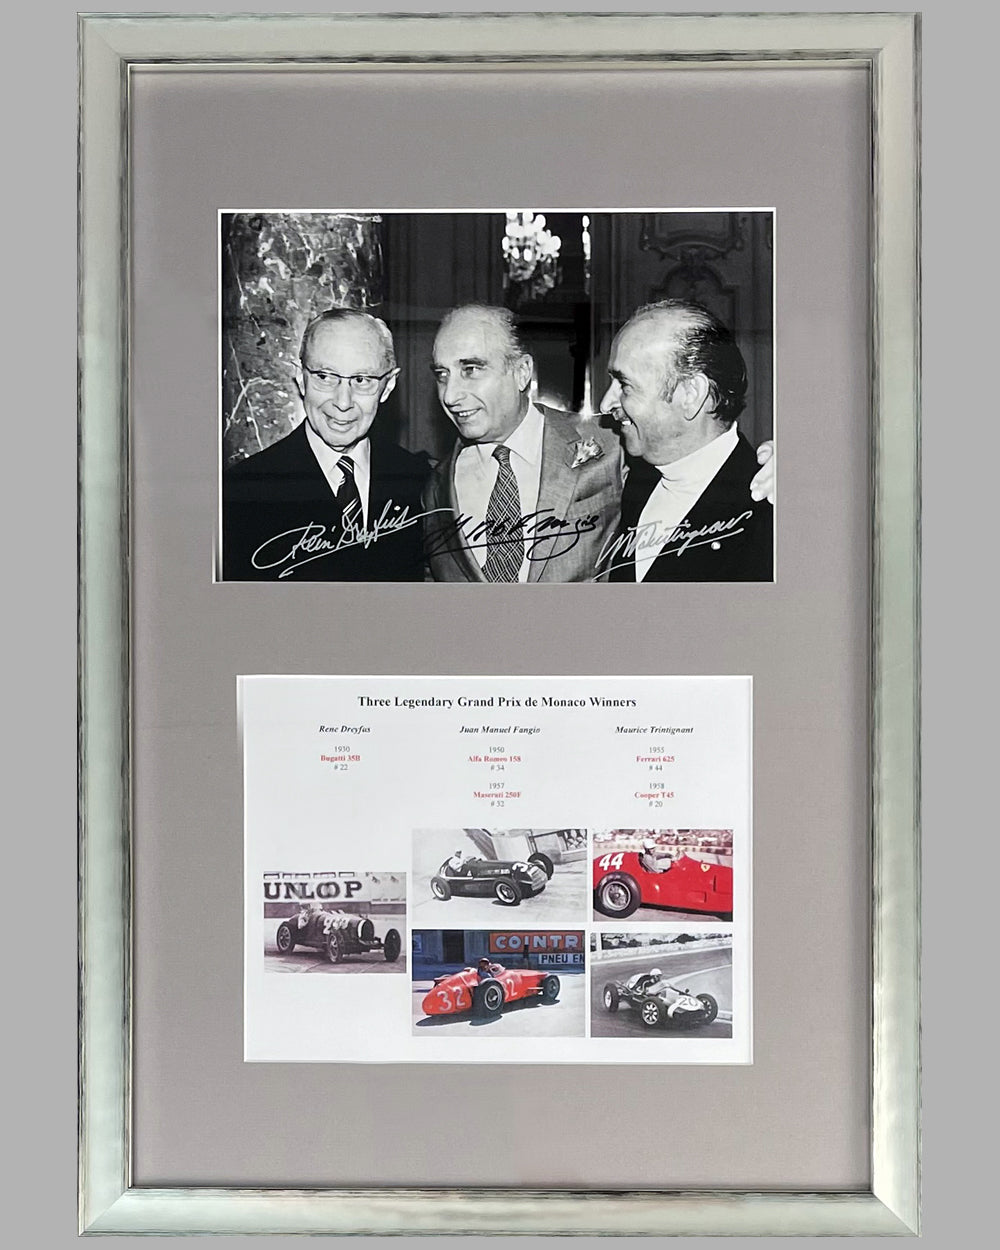 The Legendary Grand Prix de Monaco Winners autographed photo montage